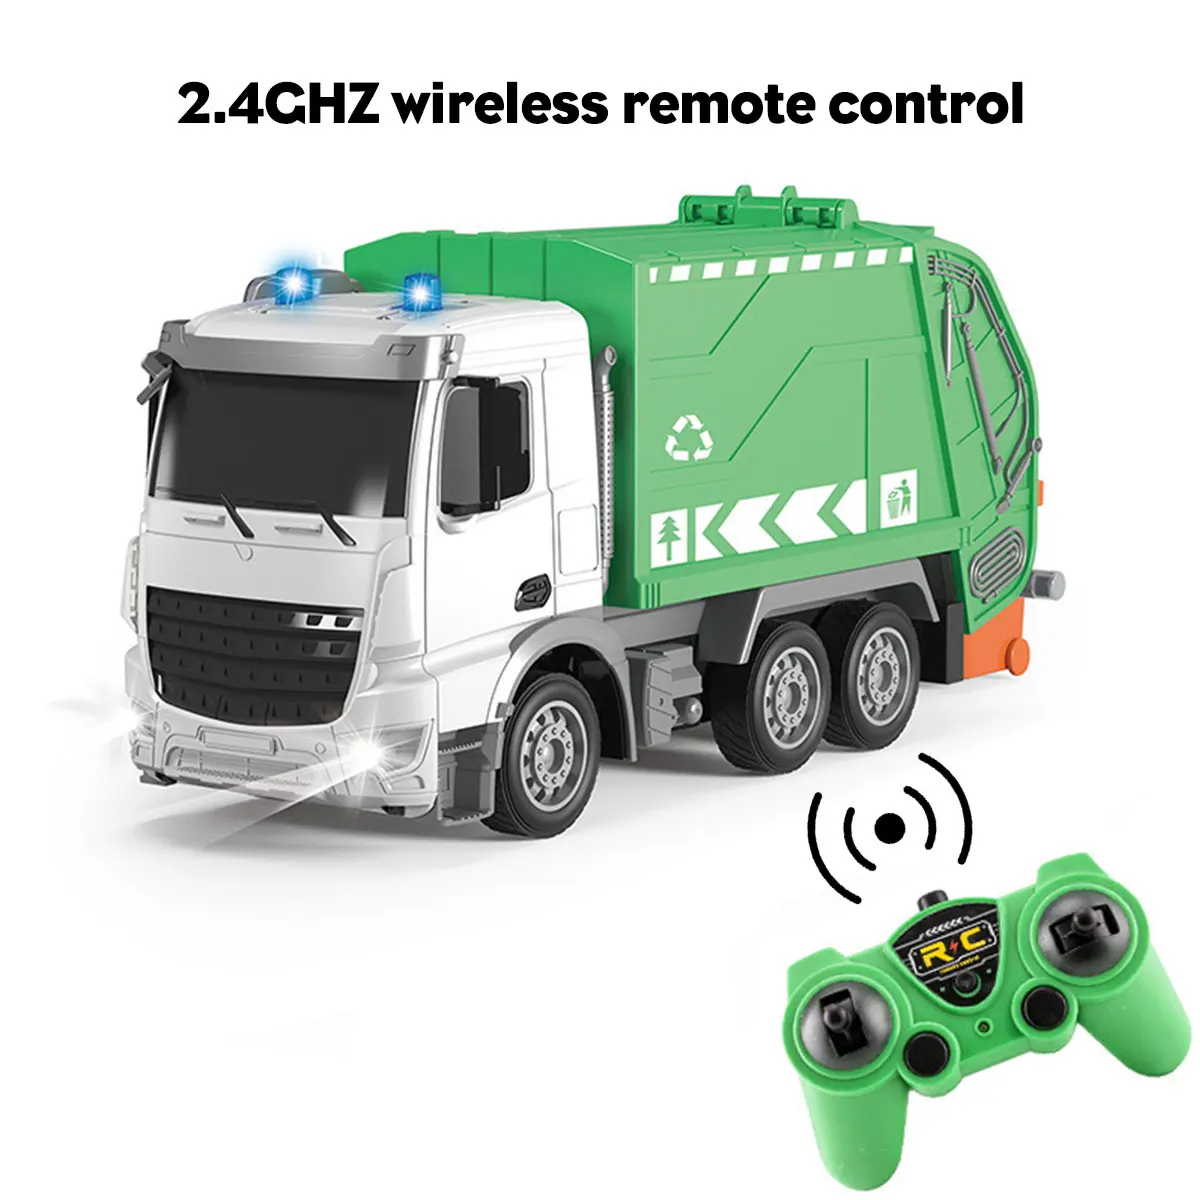 Grande camion RC 2.4G telecomando veicolo igienico-sanitario camion  radiocomando auto simulazione camion della spazzatura auto bambini regalo  per bambini _ - AliExpress Mobile